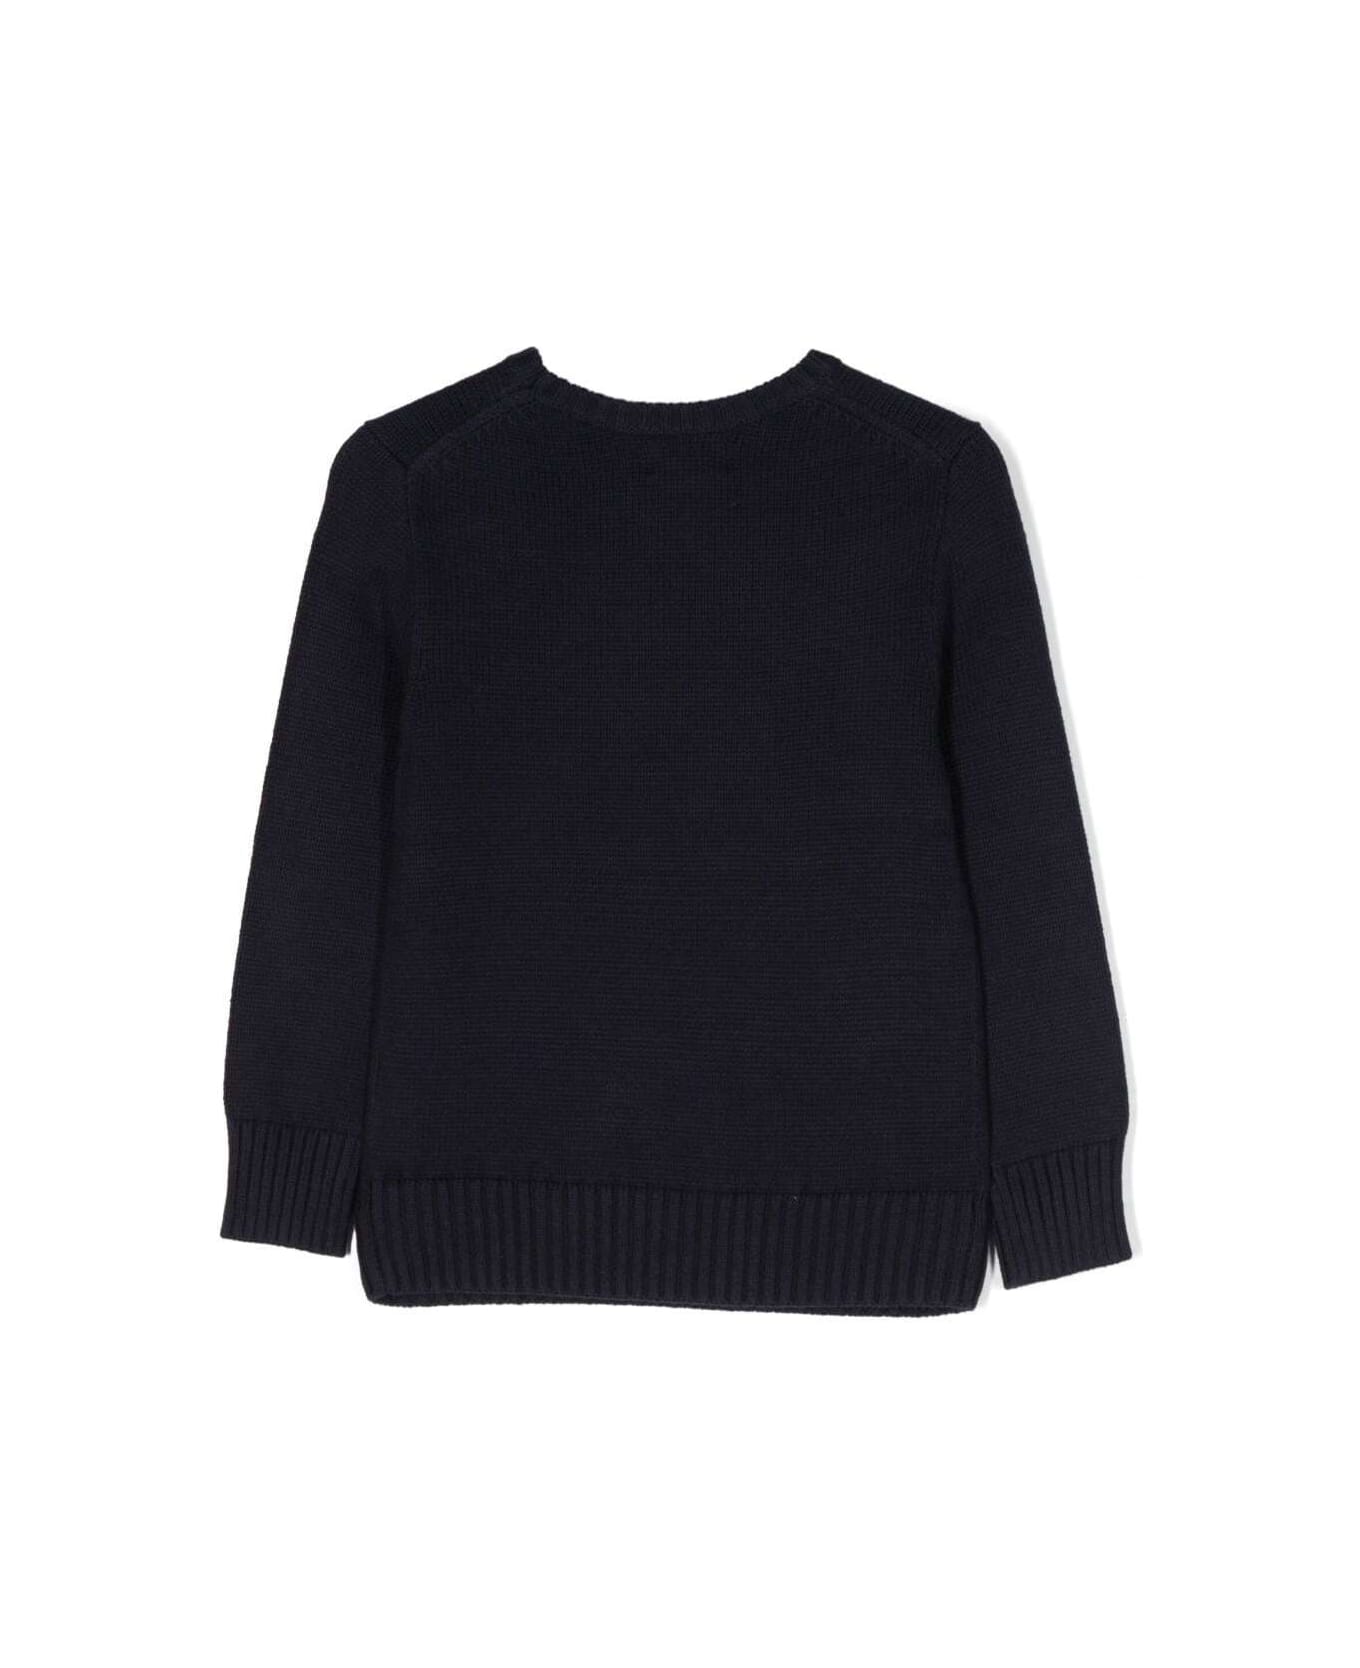 Ralph Lauren Ls Bear Sweater Pullover